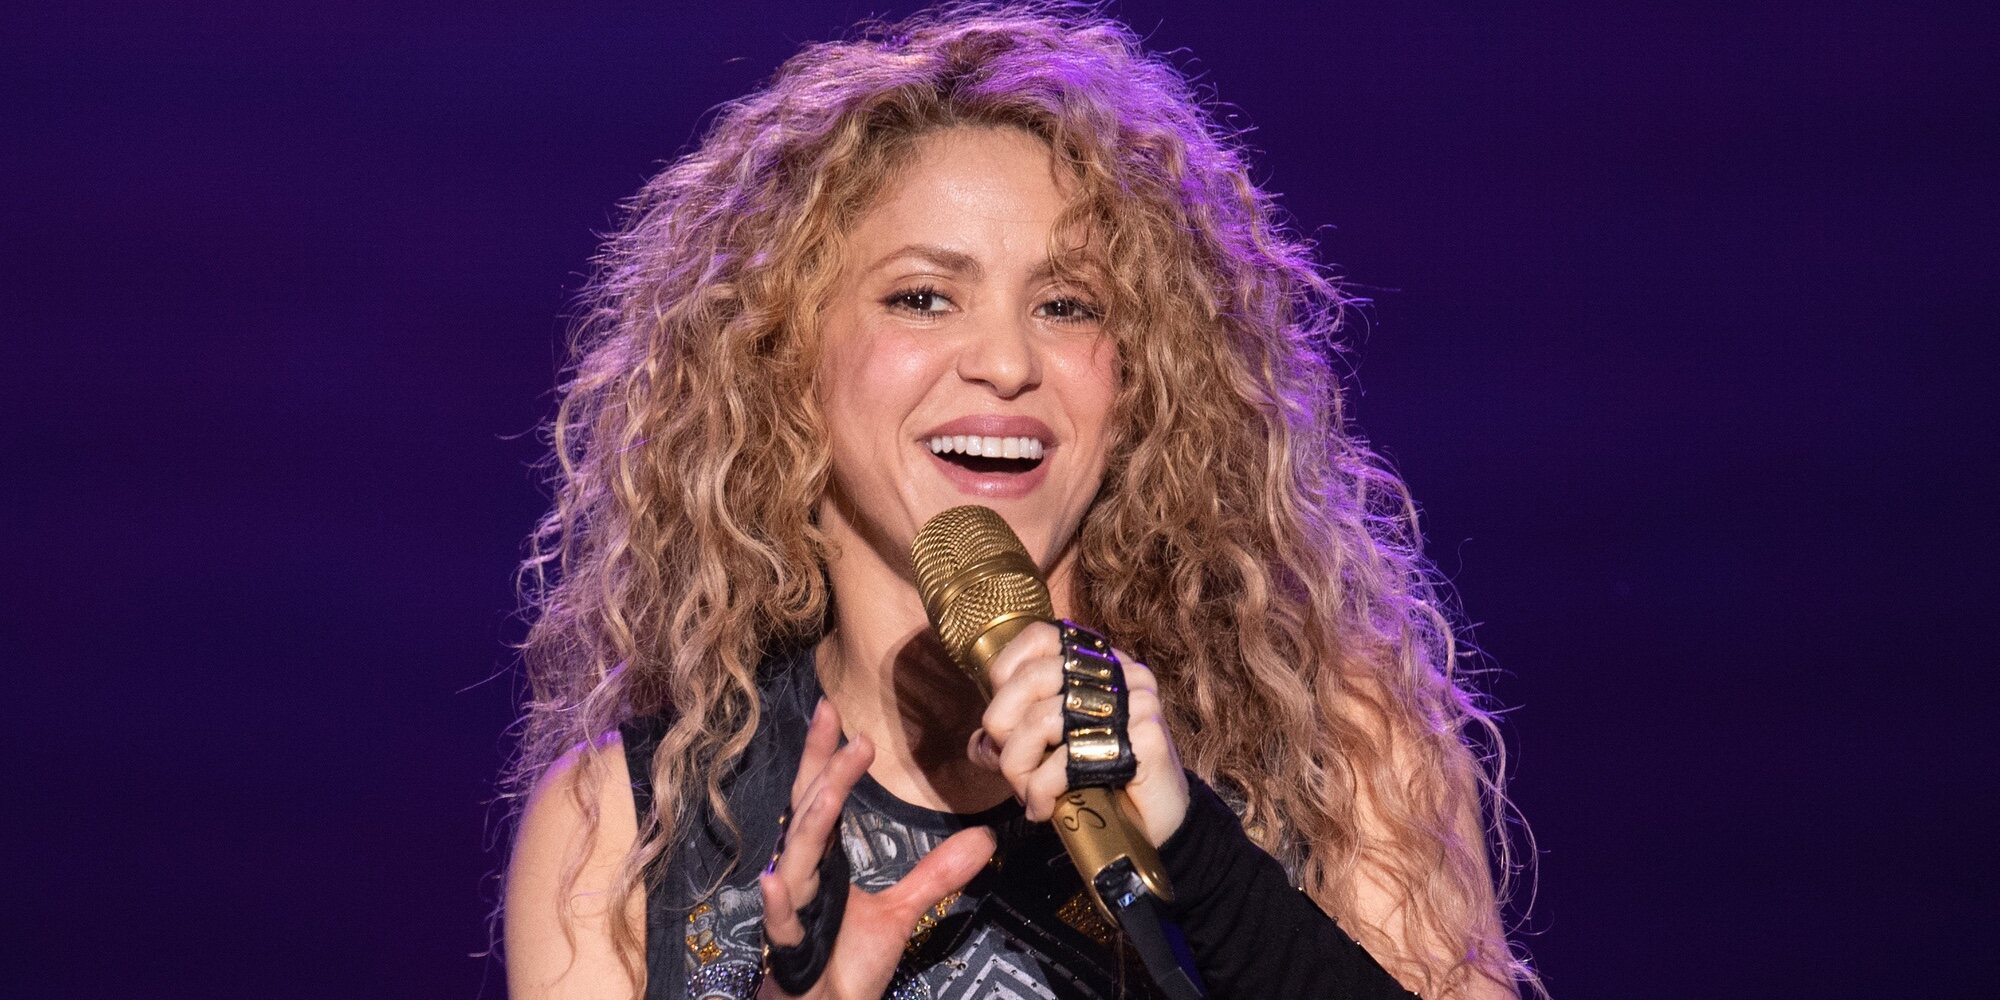 Shakira tampoco actuará en el Mundial de Qatar 2022 por las críticas recibidas